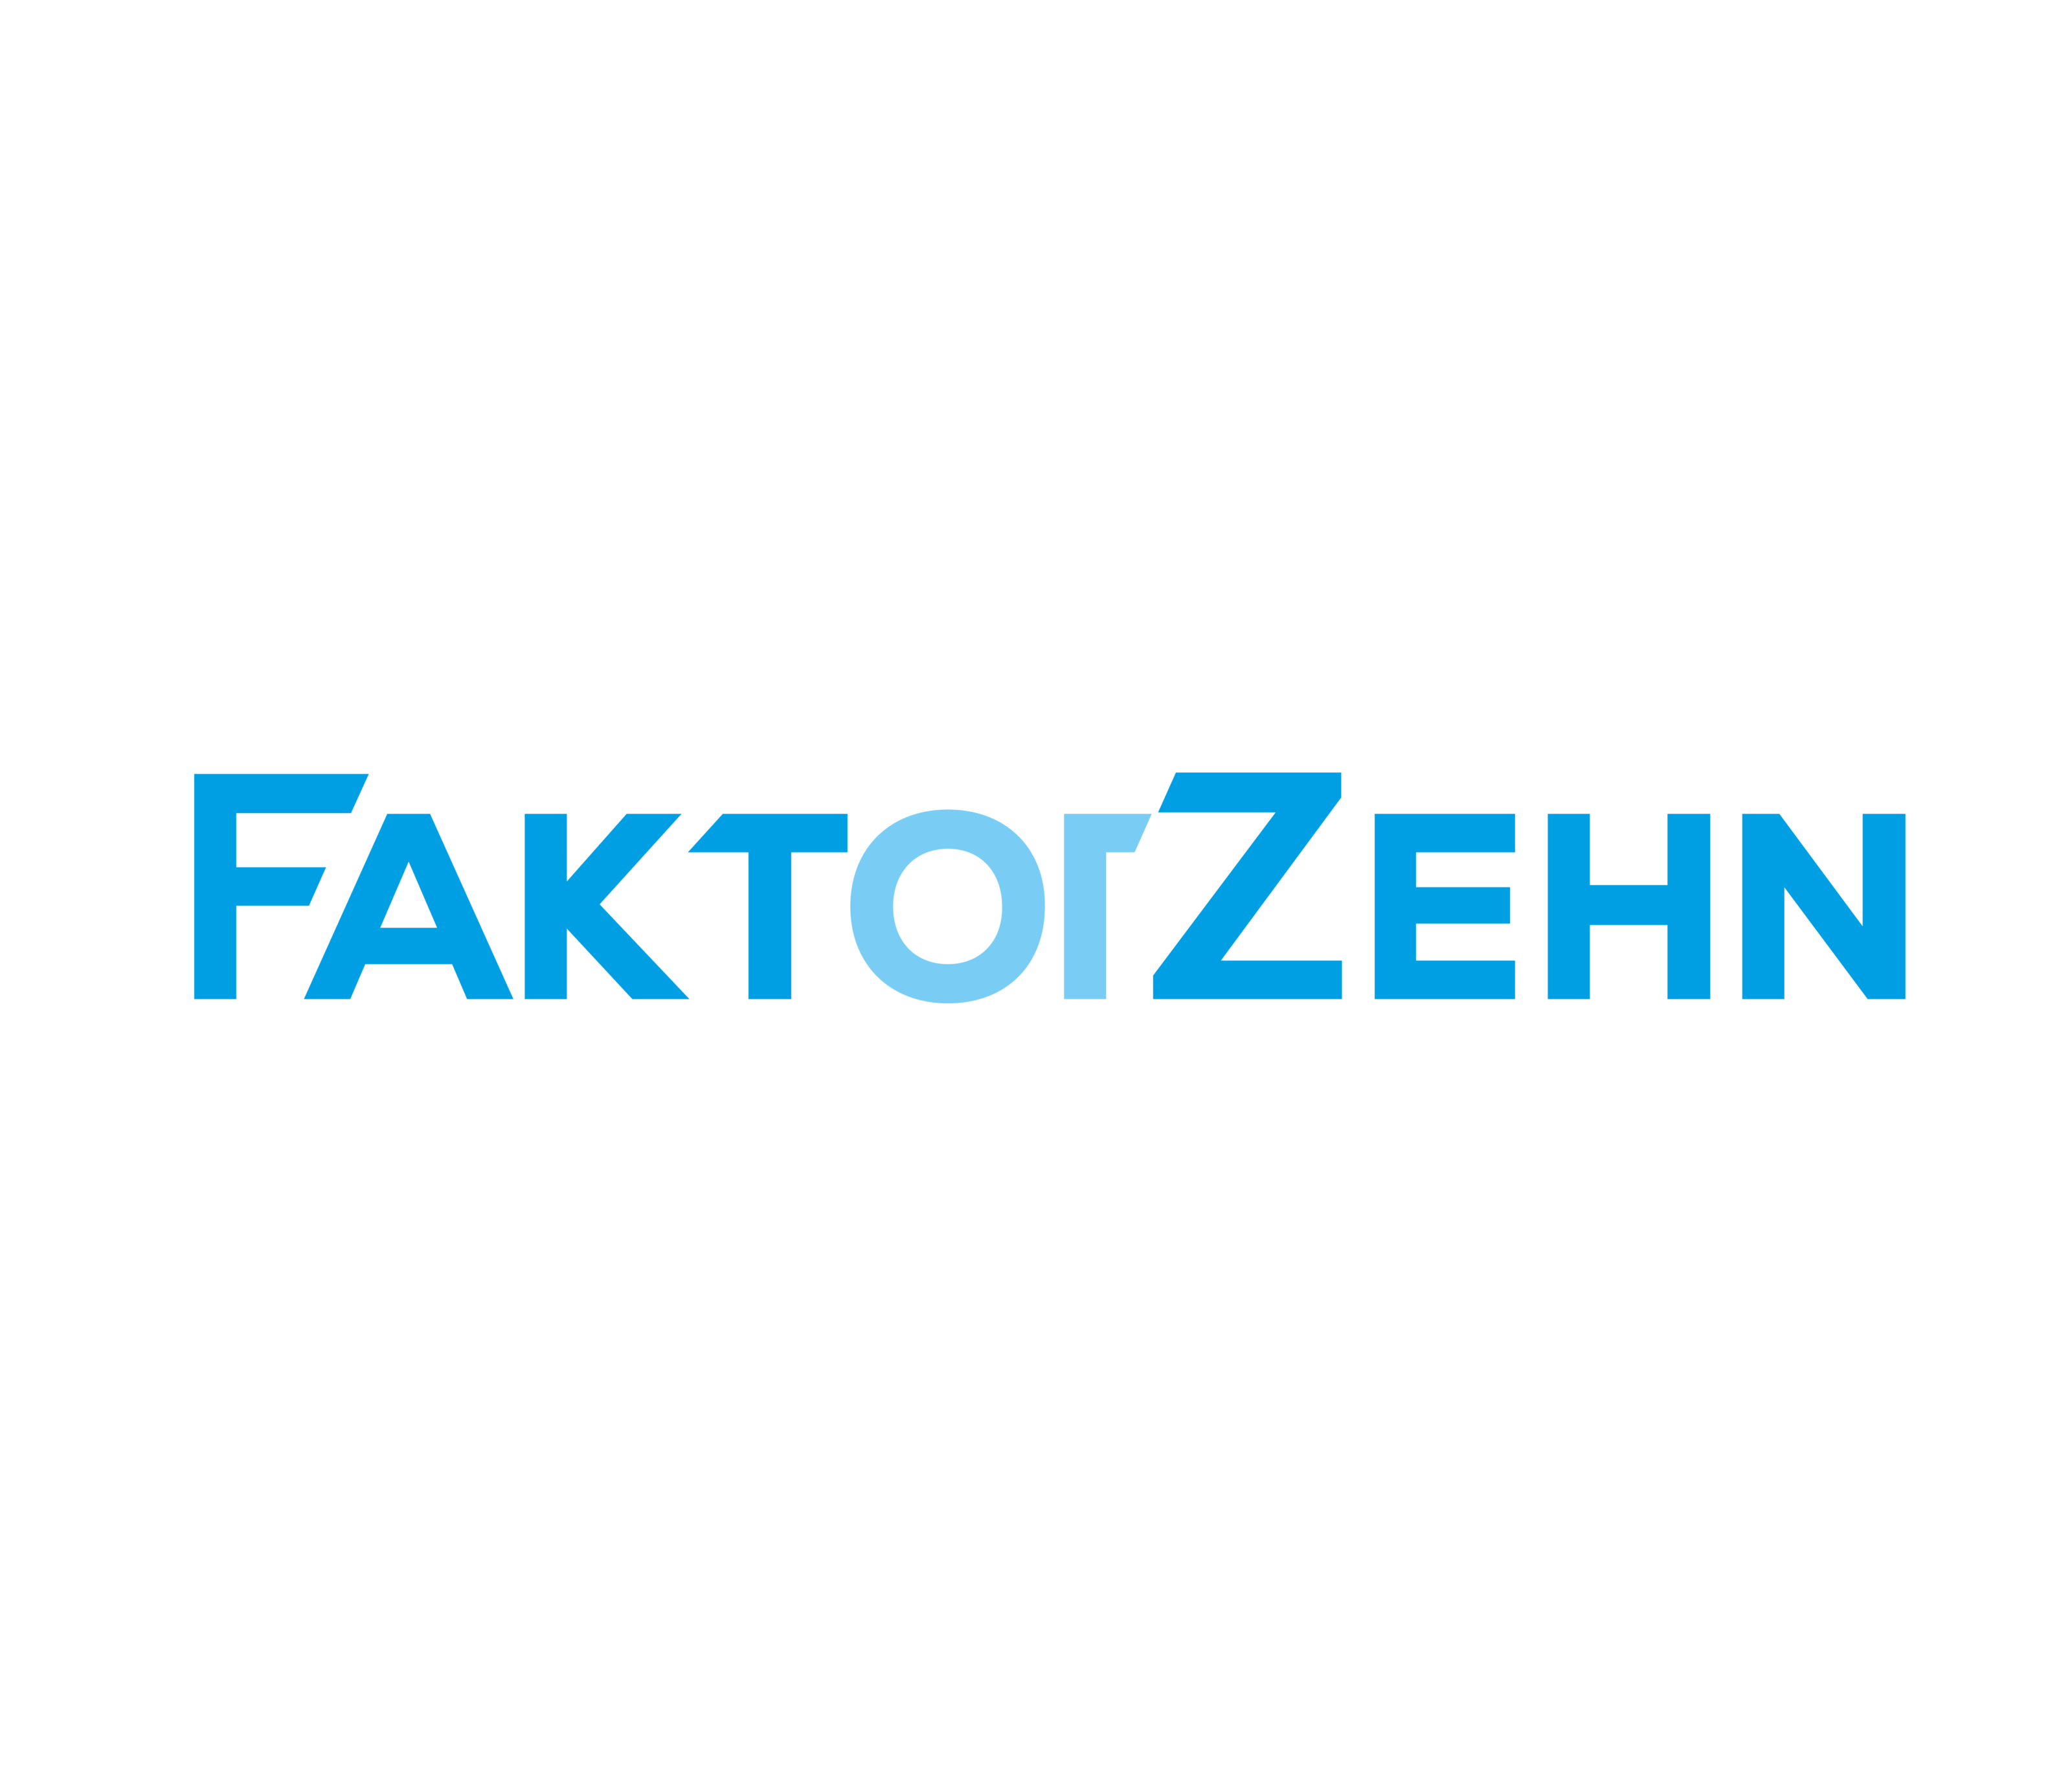 (c) Faktorzehn.com